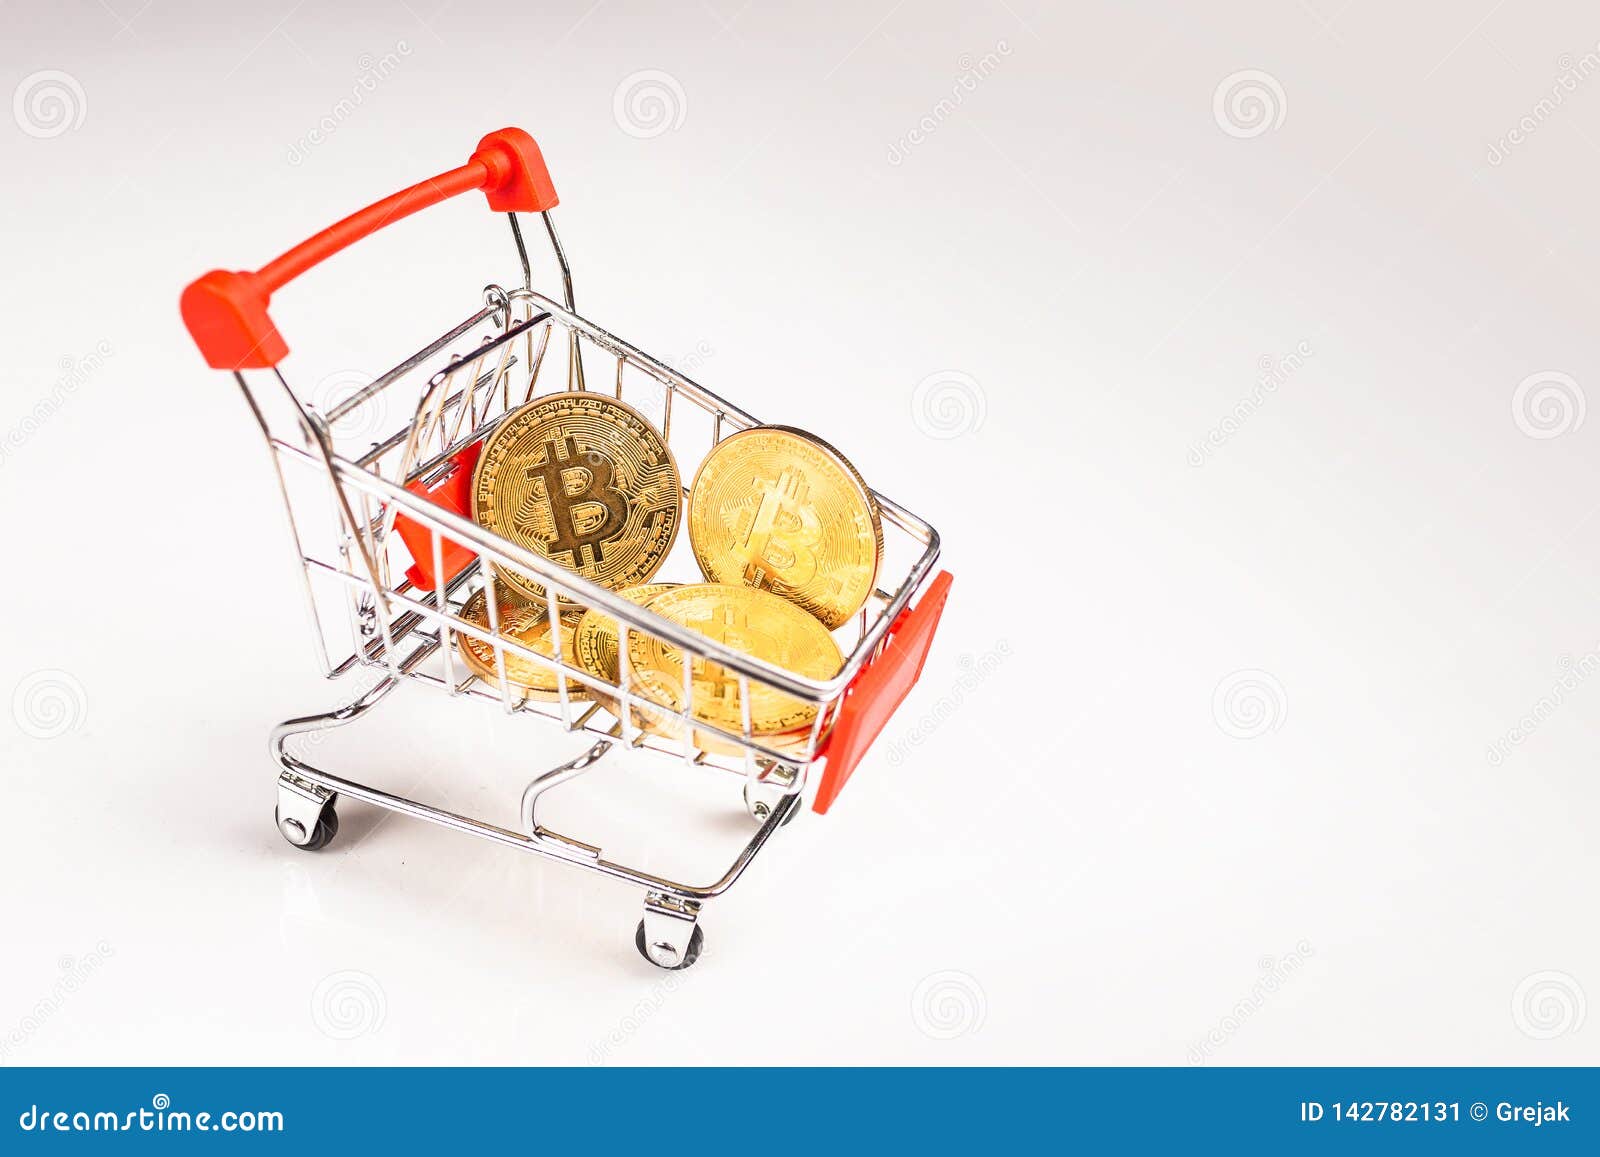 bitcoin shopping 05 35 bitcoin